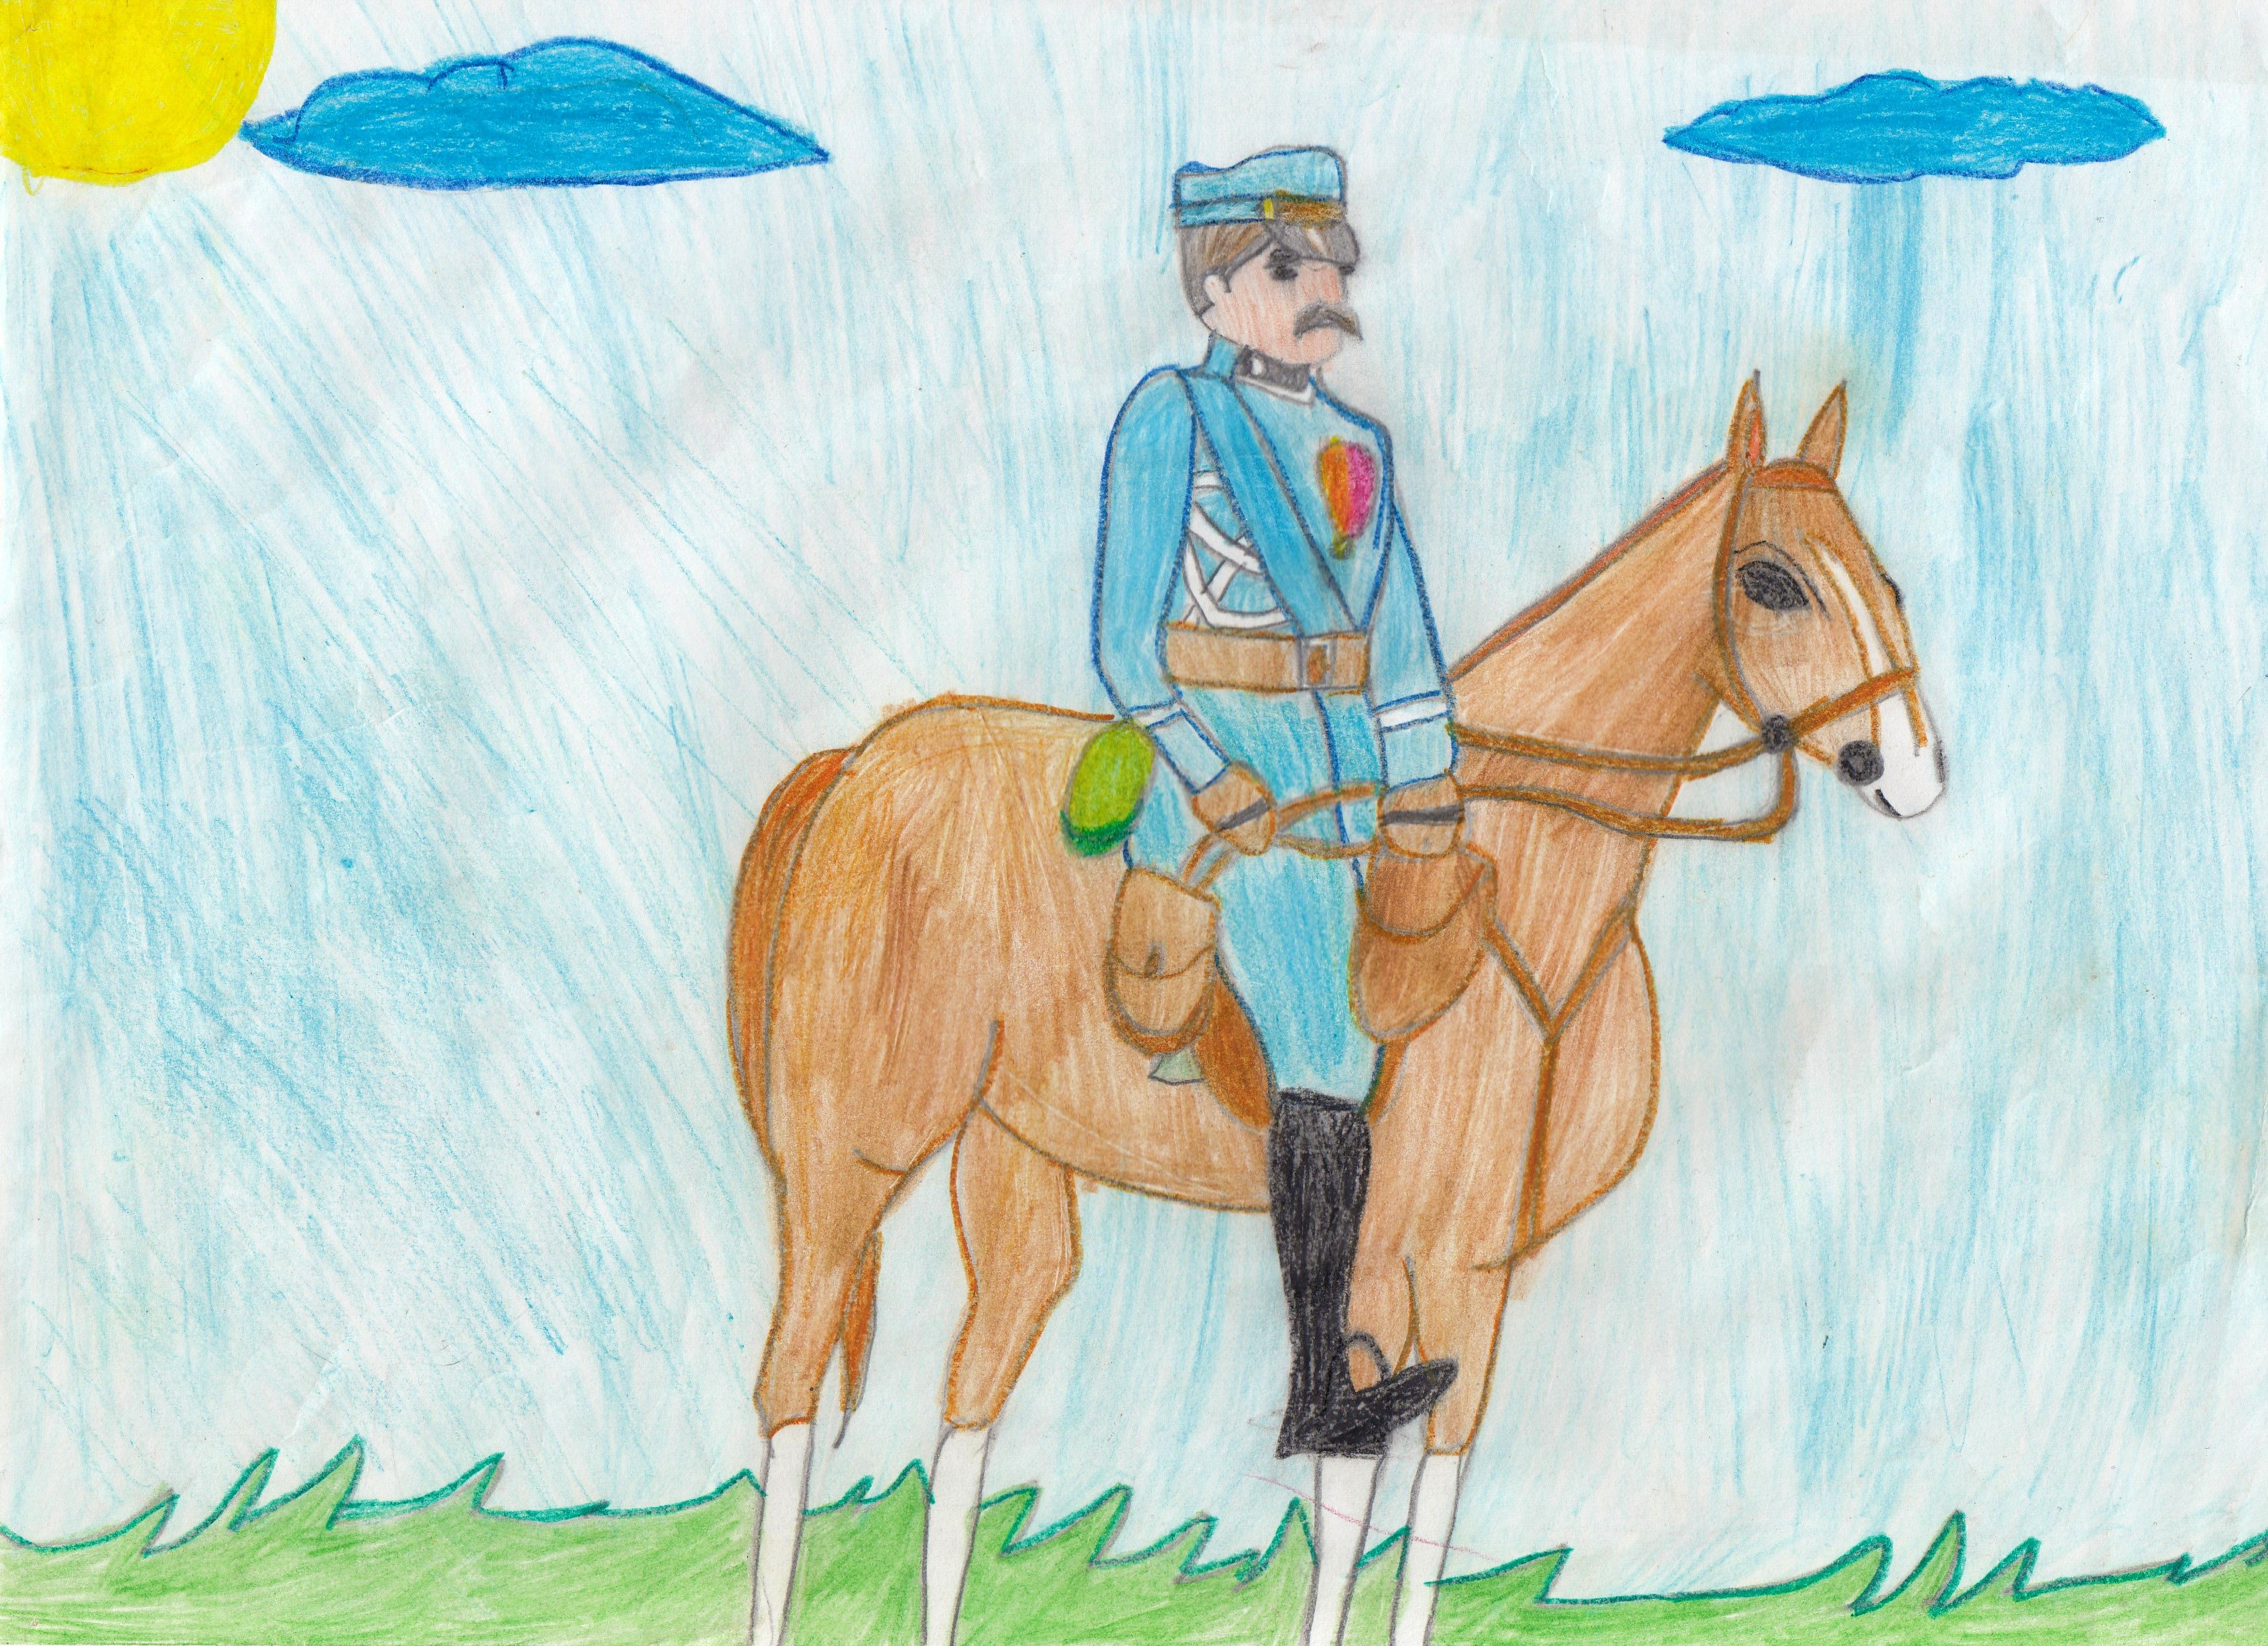 Mam swoją misję niczym Marszałek Piłsudski (rysunek, kredka na papierze, 1999)